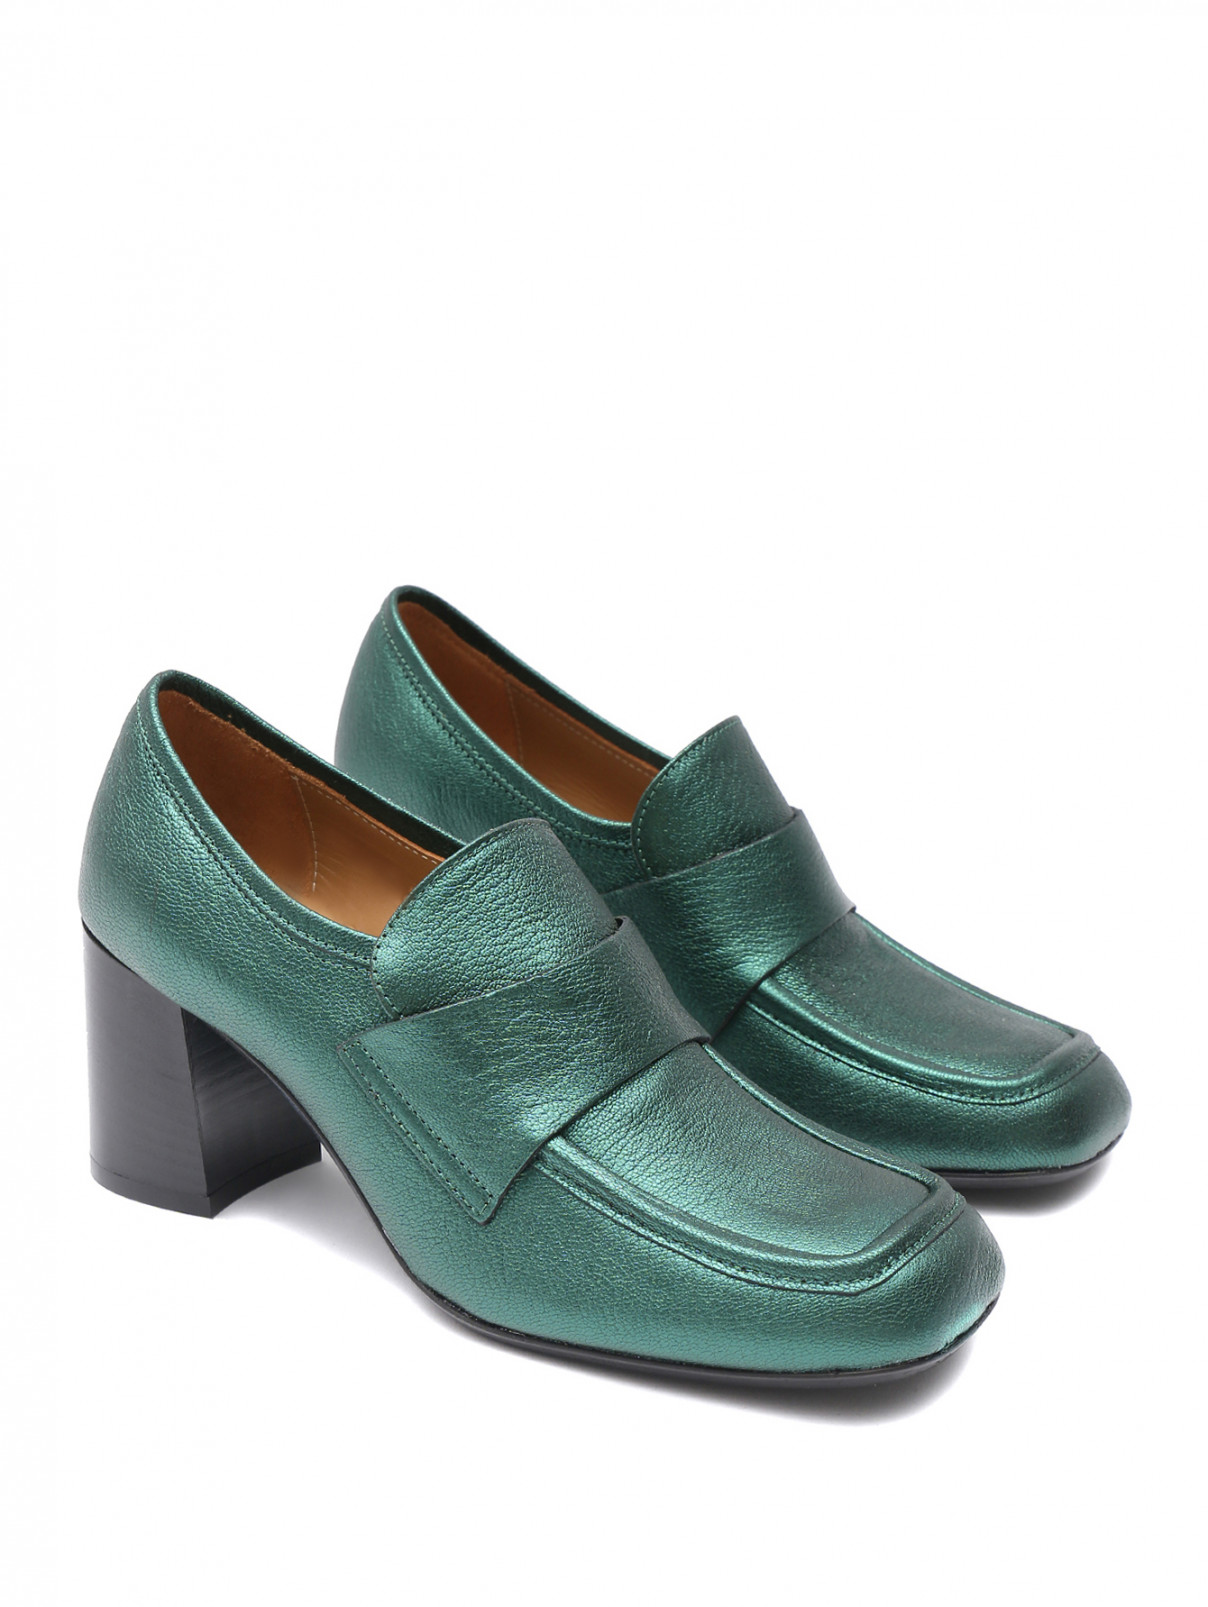 Туфли из блестящей кожи на каблуке Fabio Rusconi  –  Общий вид  – Цвет:  Зеленый